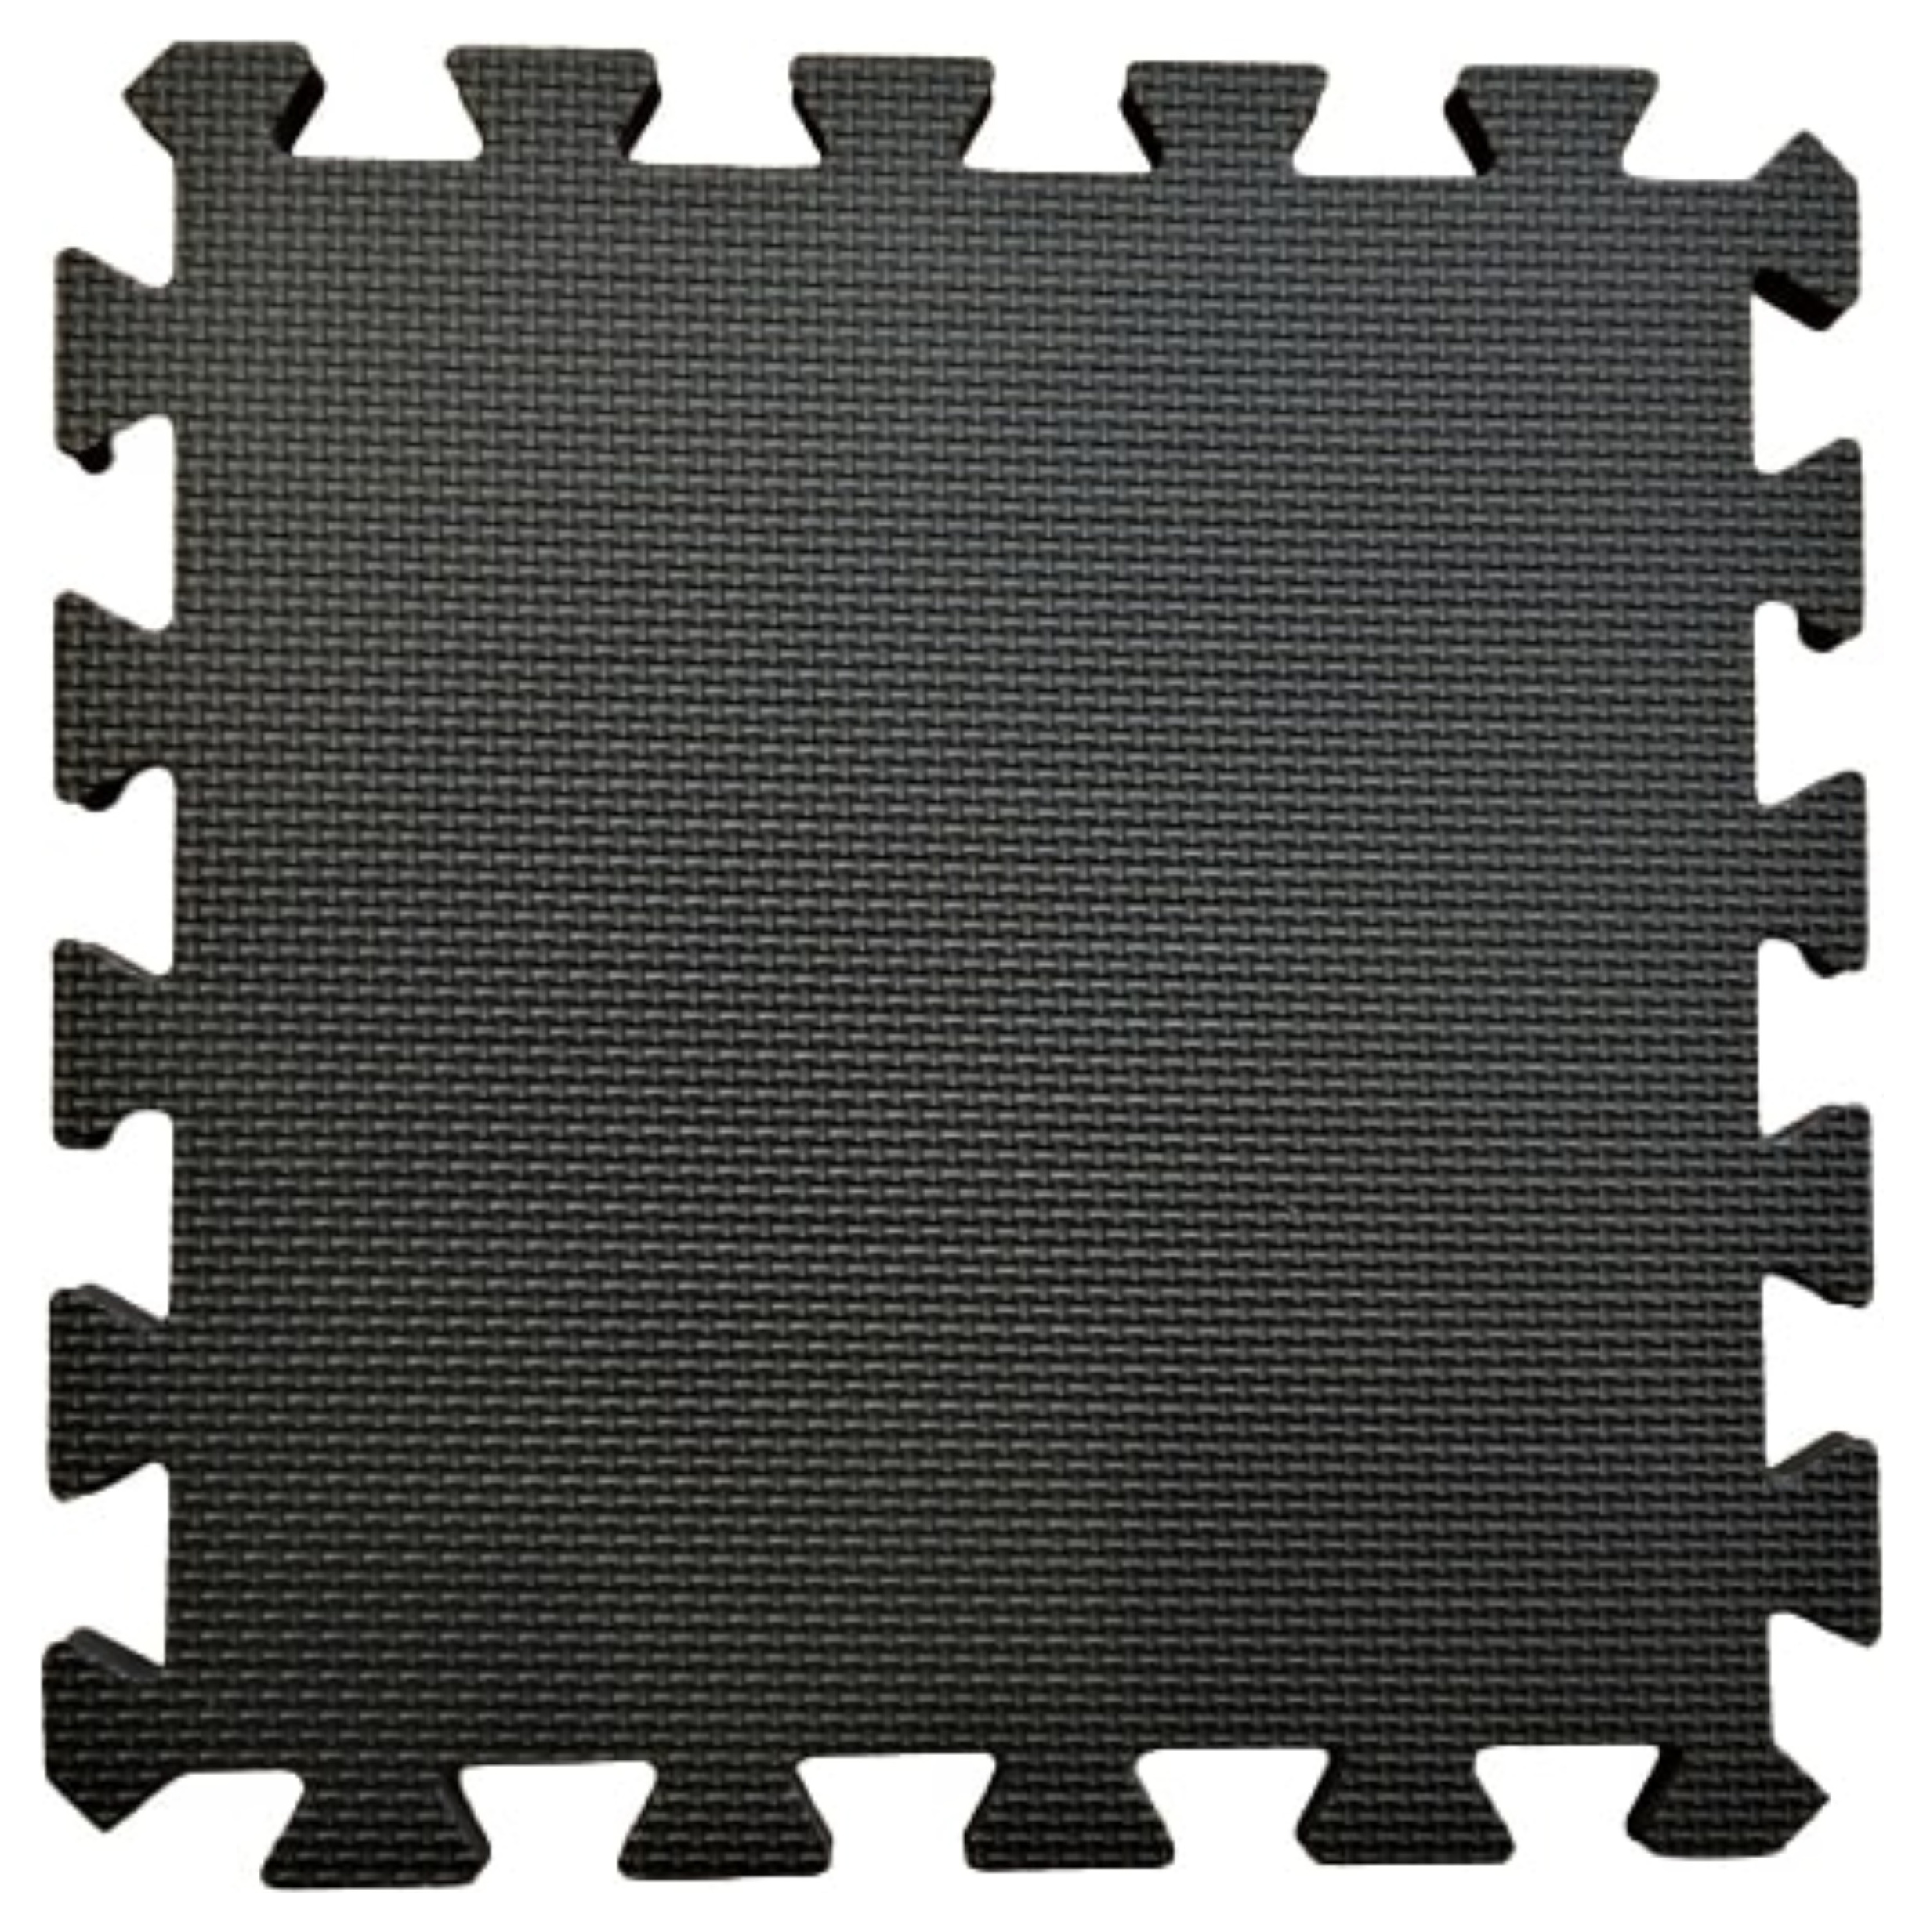 Warm Floor Black Interlocking Floor Tiles for Garden Buildings - 6 x 3ft